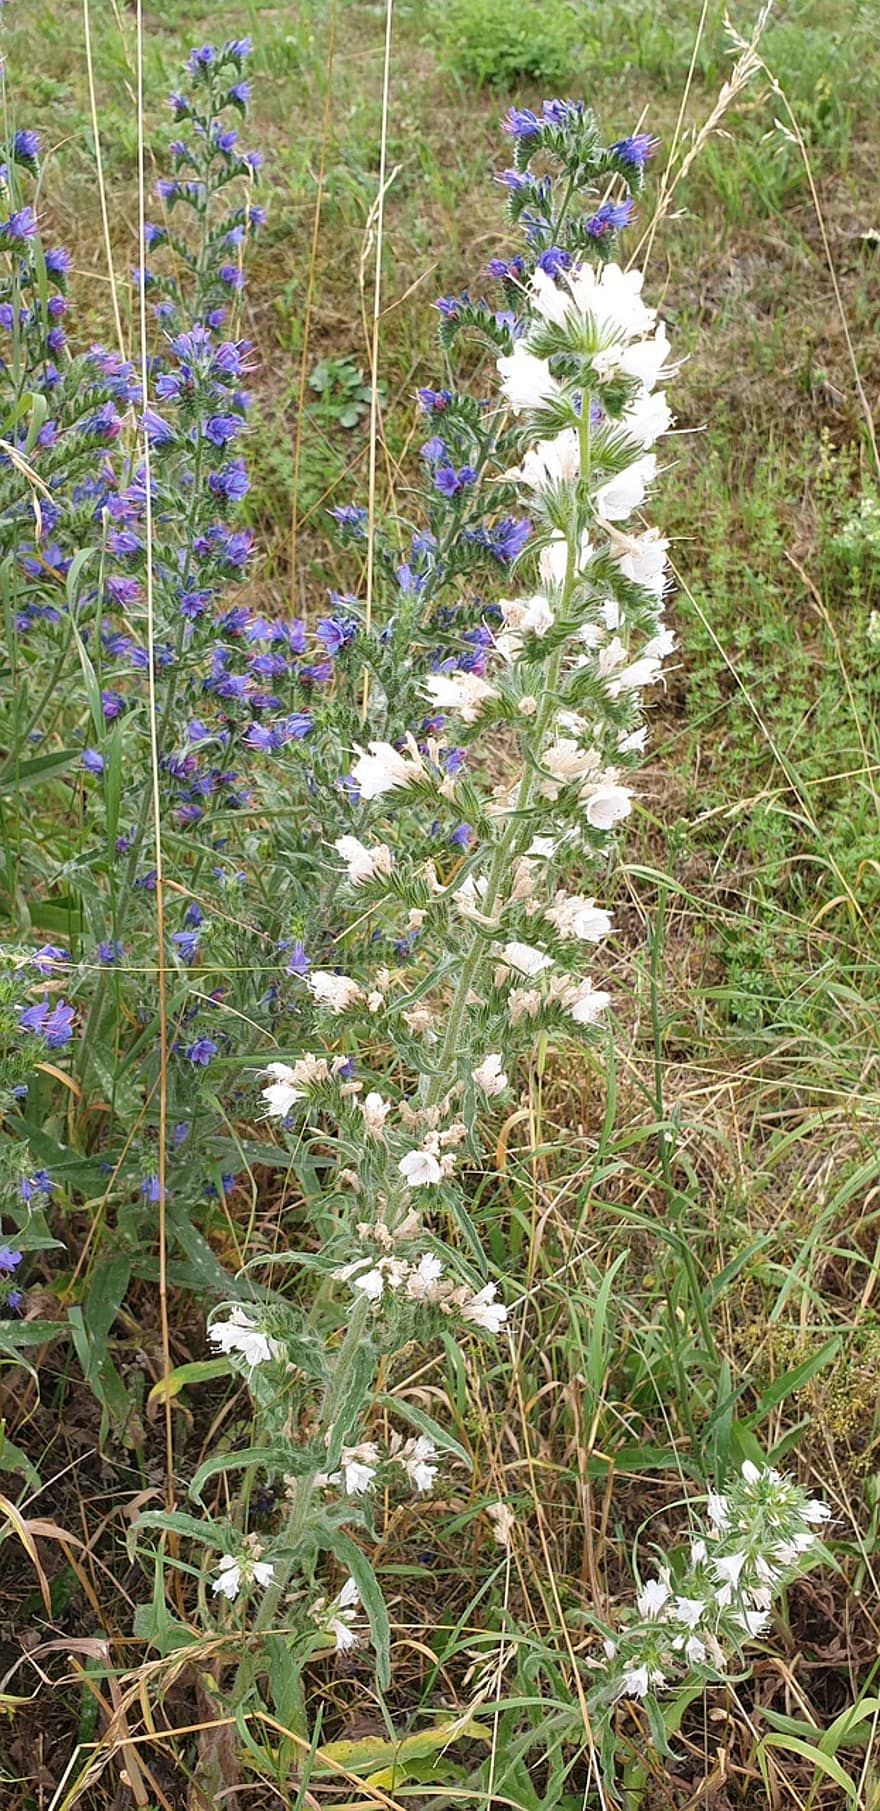 보통의 natternkopf, 흰뱀 머리, 야생의 꽃, 꽃들, 화이트, 에키 움 불가 벌, 뱀 머리, 푸른, 파란색 natternkopf, 에키 움, 라브레 왈레